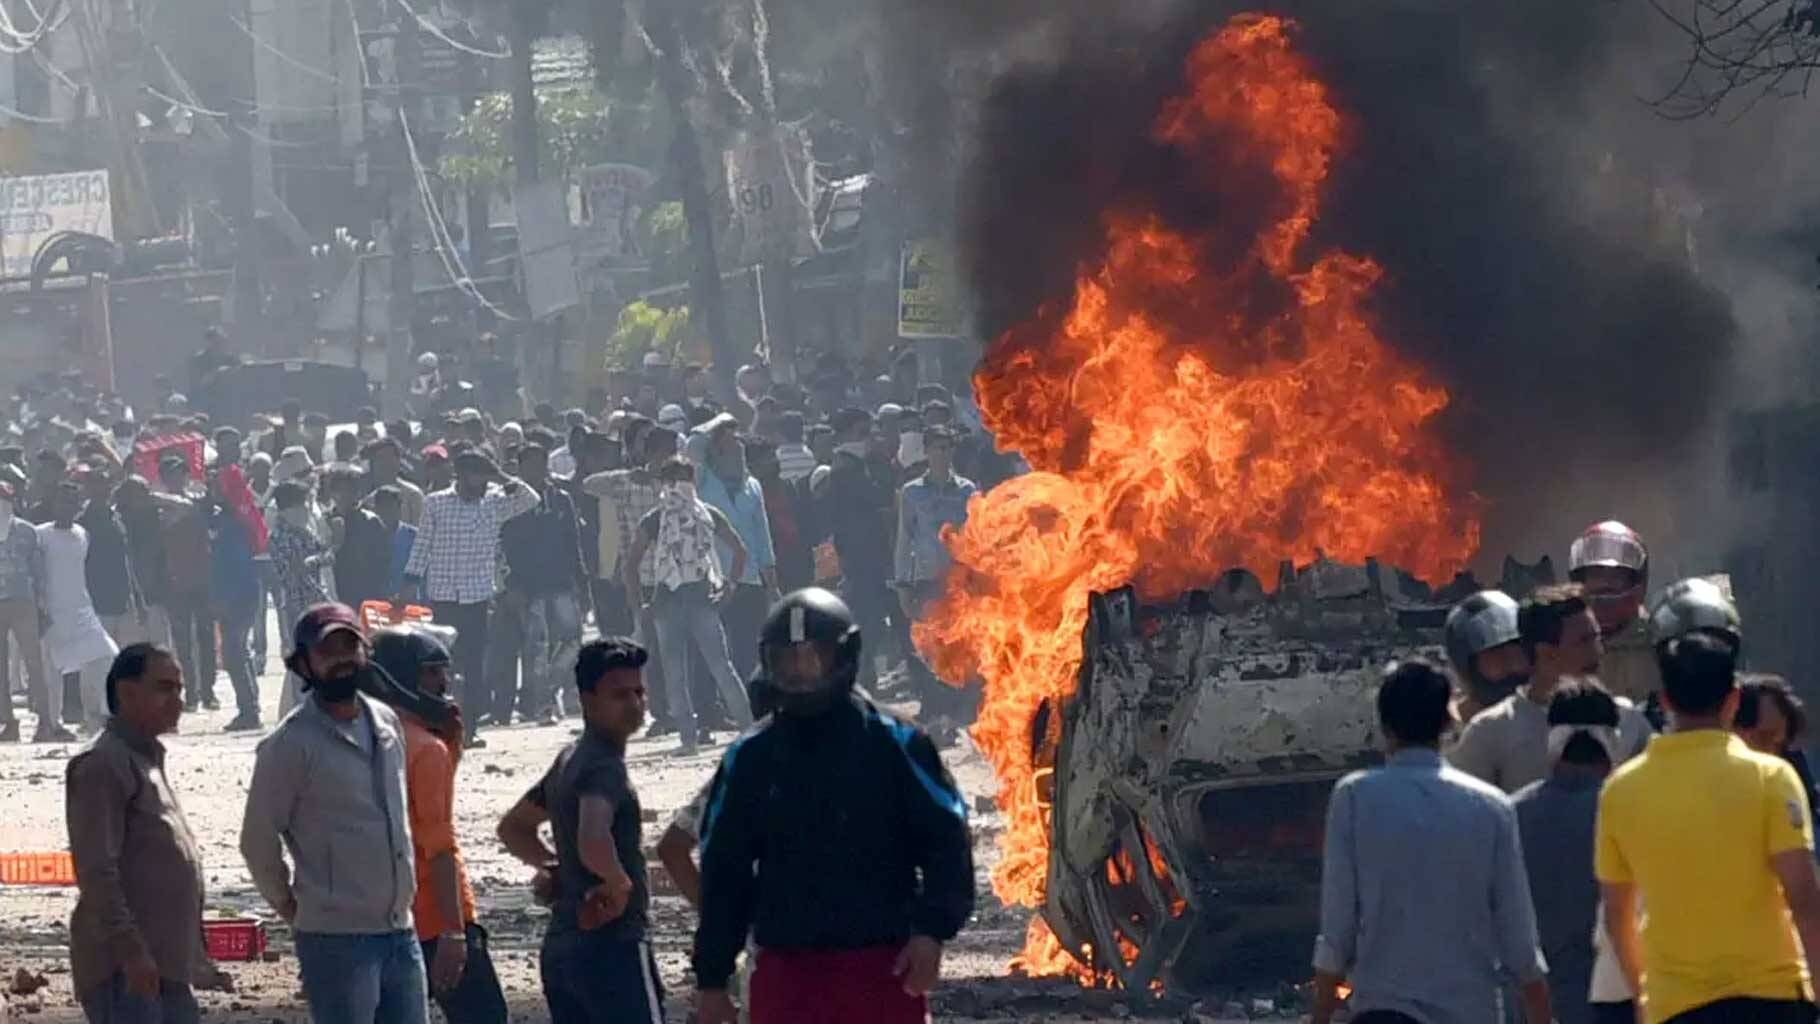 दिल्ली दंगा मामले में जामिया एलुमनाई एसोसिएशन के अध्यक्ष सिफा उर-रहमान गिरफ्तार